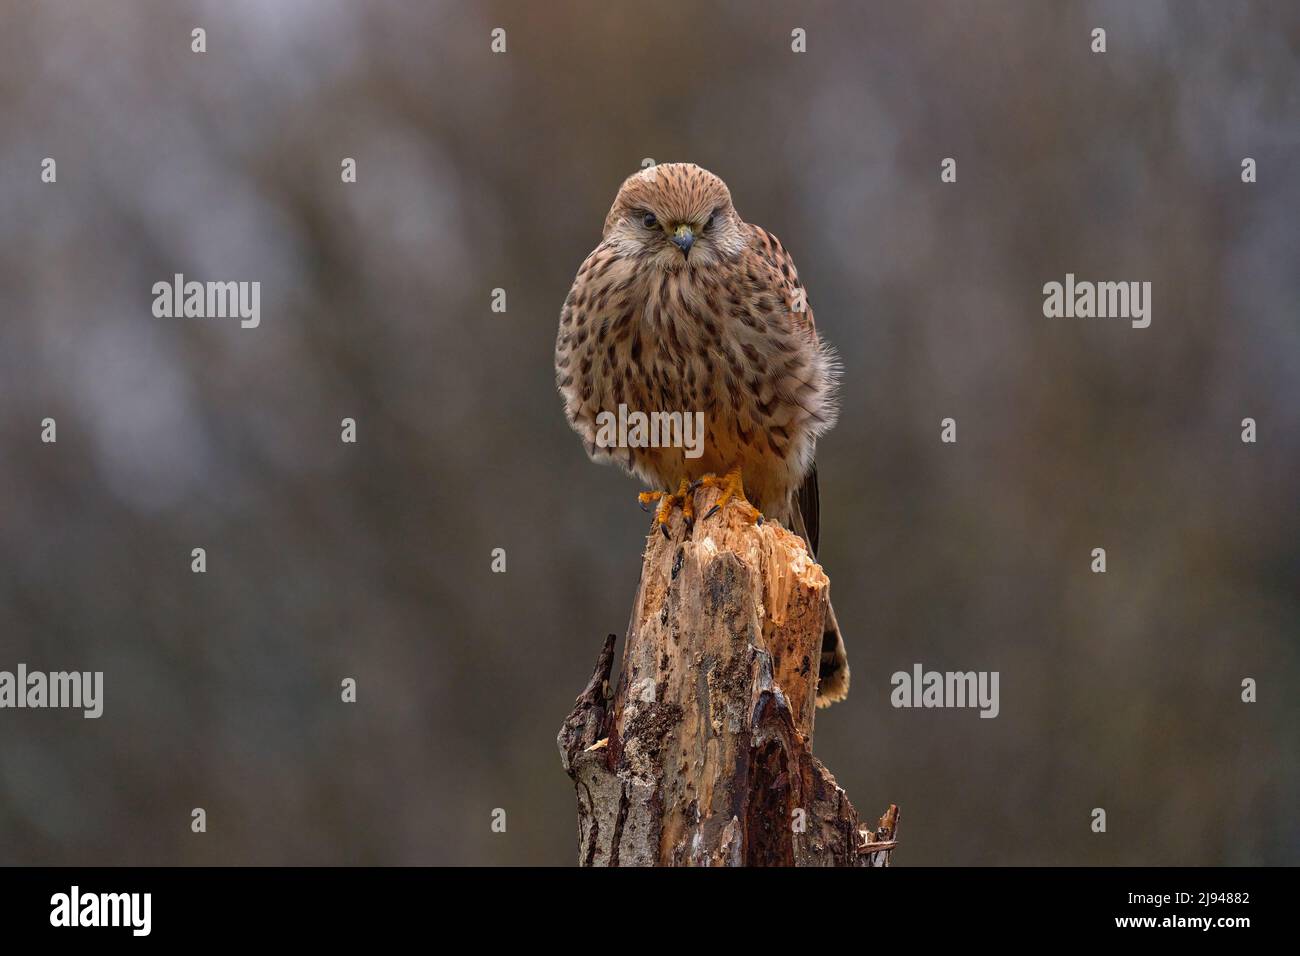 Die tschechische Tierwelt. Kestrel sitzt auf dem Ast mit Pilzen. Falco tinnunculus, kleiner Greifvogel im Naturgebiet, Tschechien. Wildtiere Stockfoto